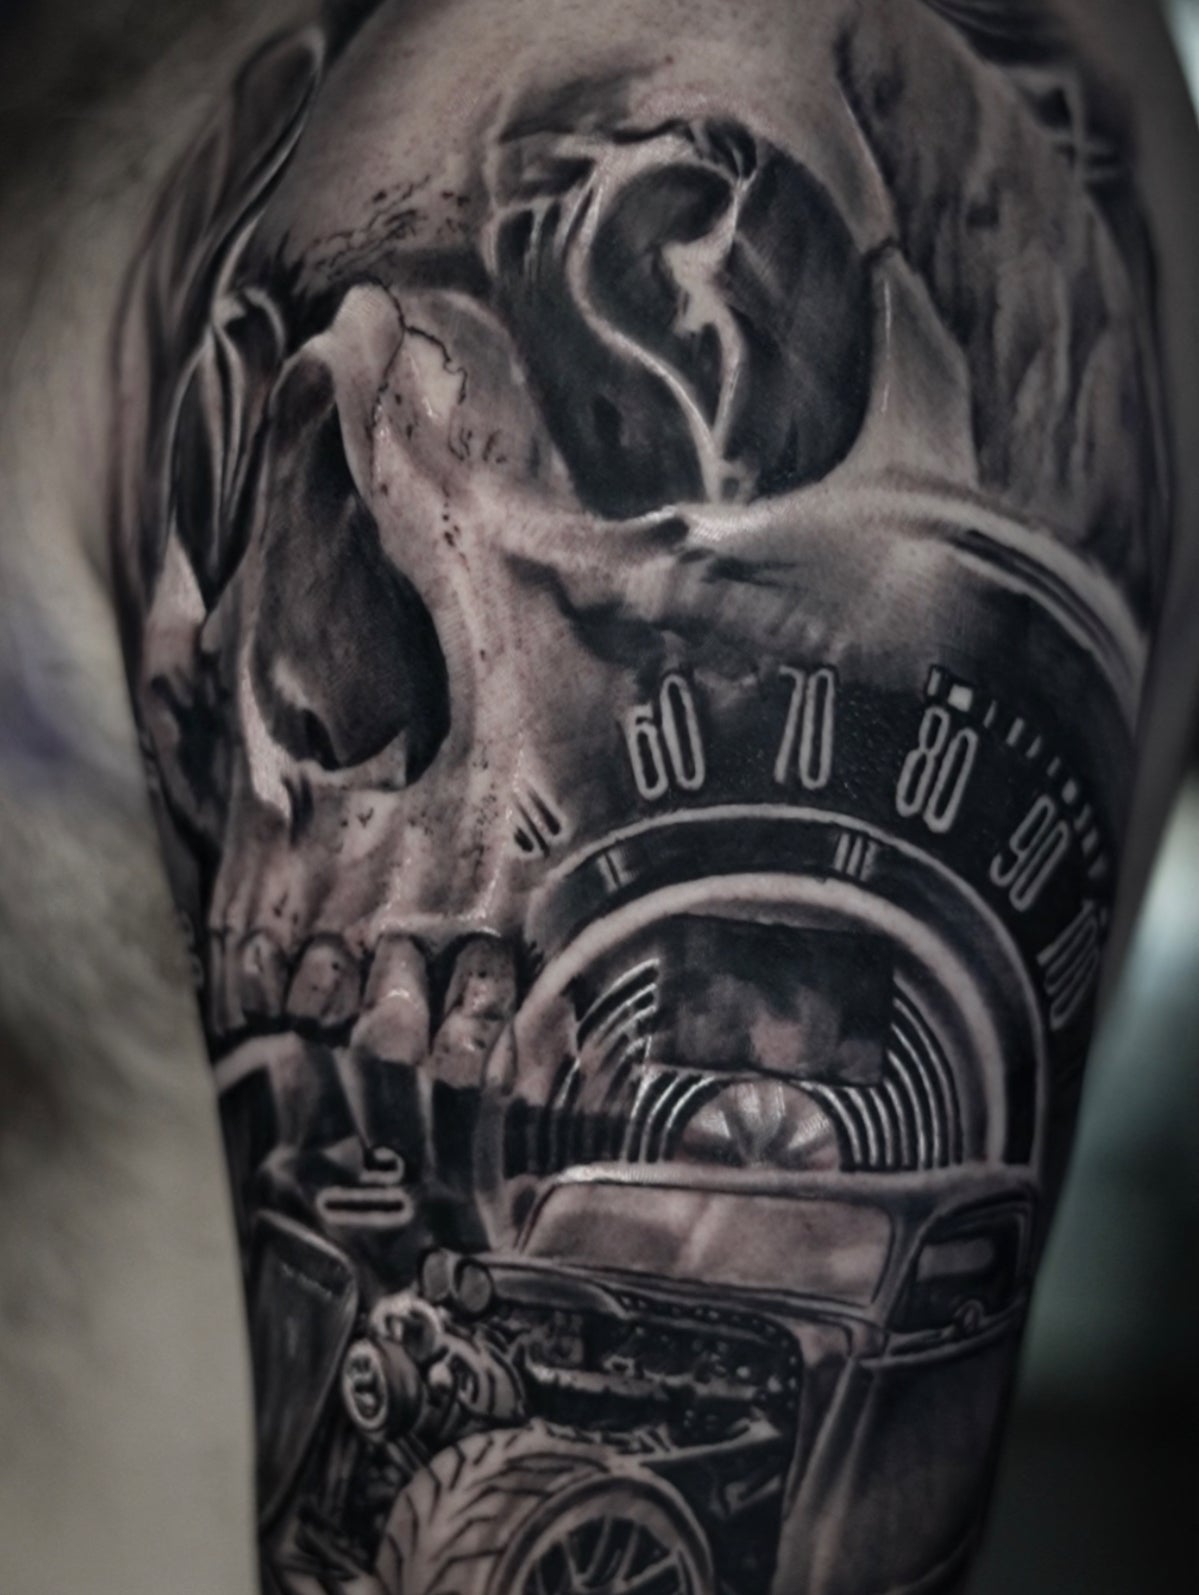 Man gets an alternator tattoo, thinks it's a turbo - PakWheels Blog